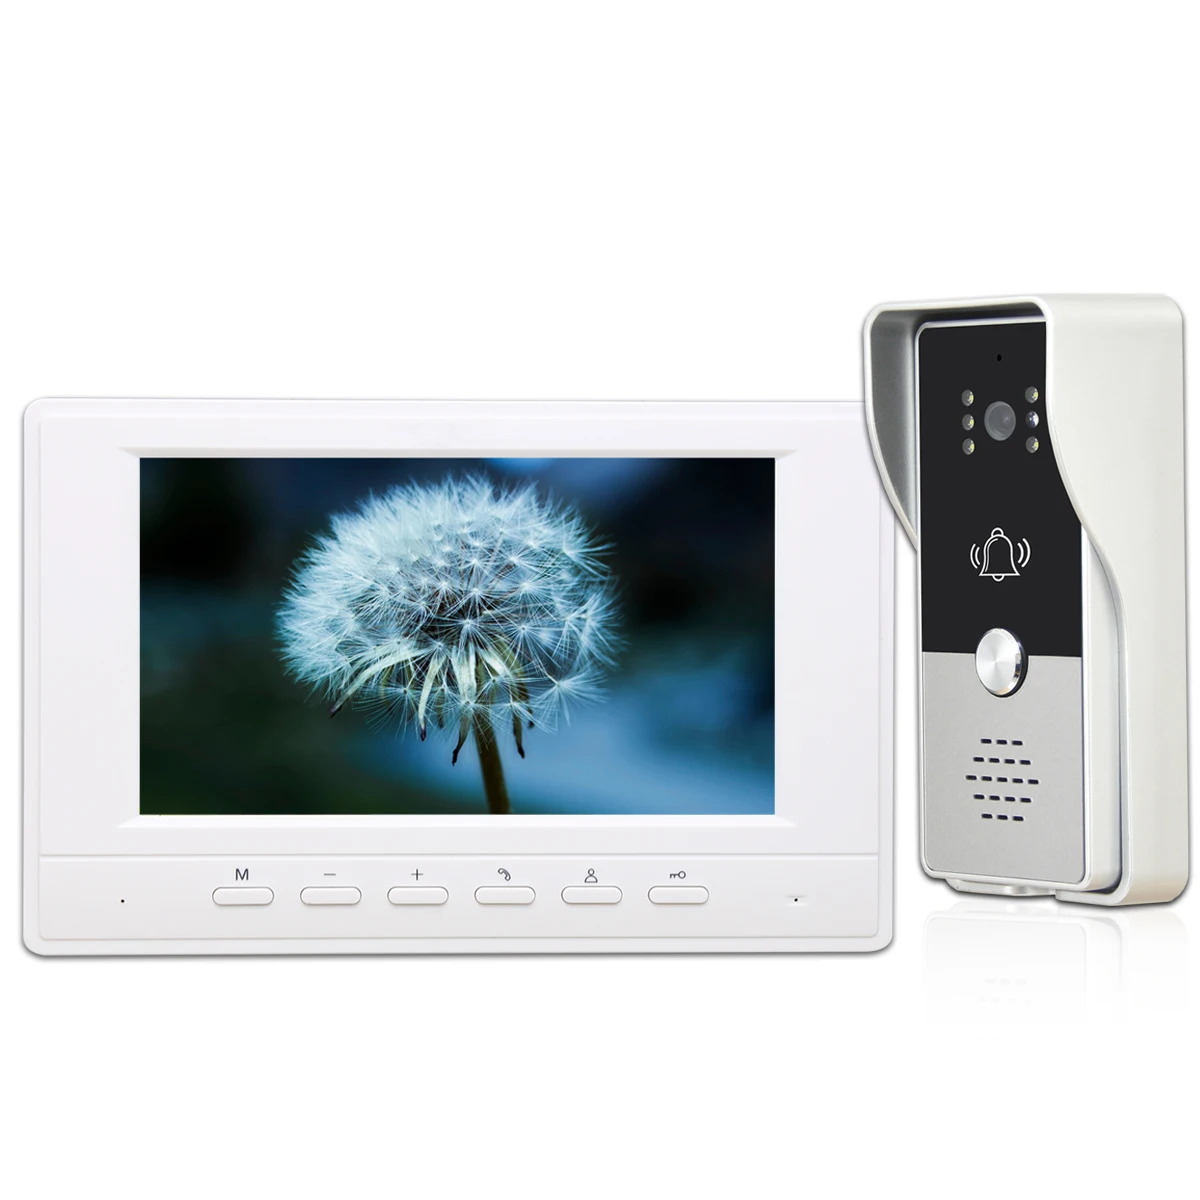 7 inch Monitor VideoDoorbell System Video Intercom Door Phone Kit for Home Villa Office  with 700TVL IR Night VisionCamera